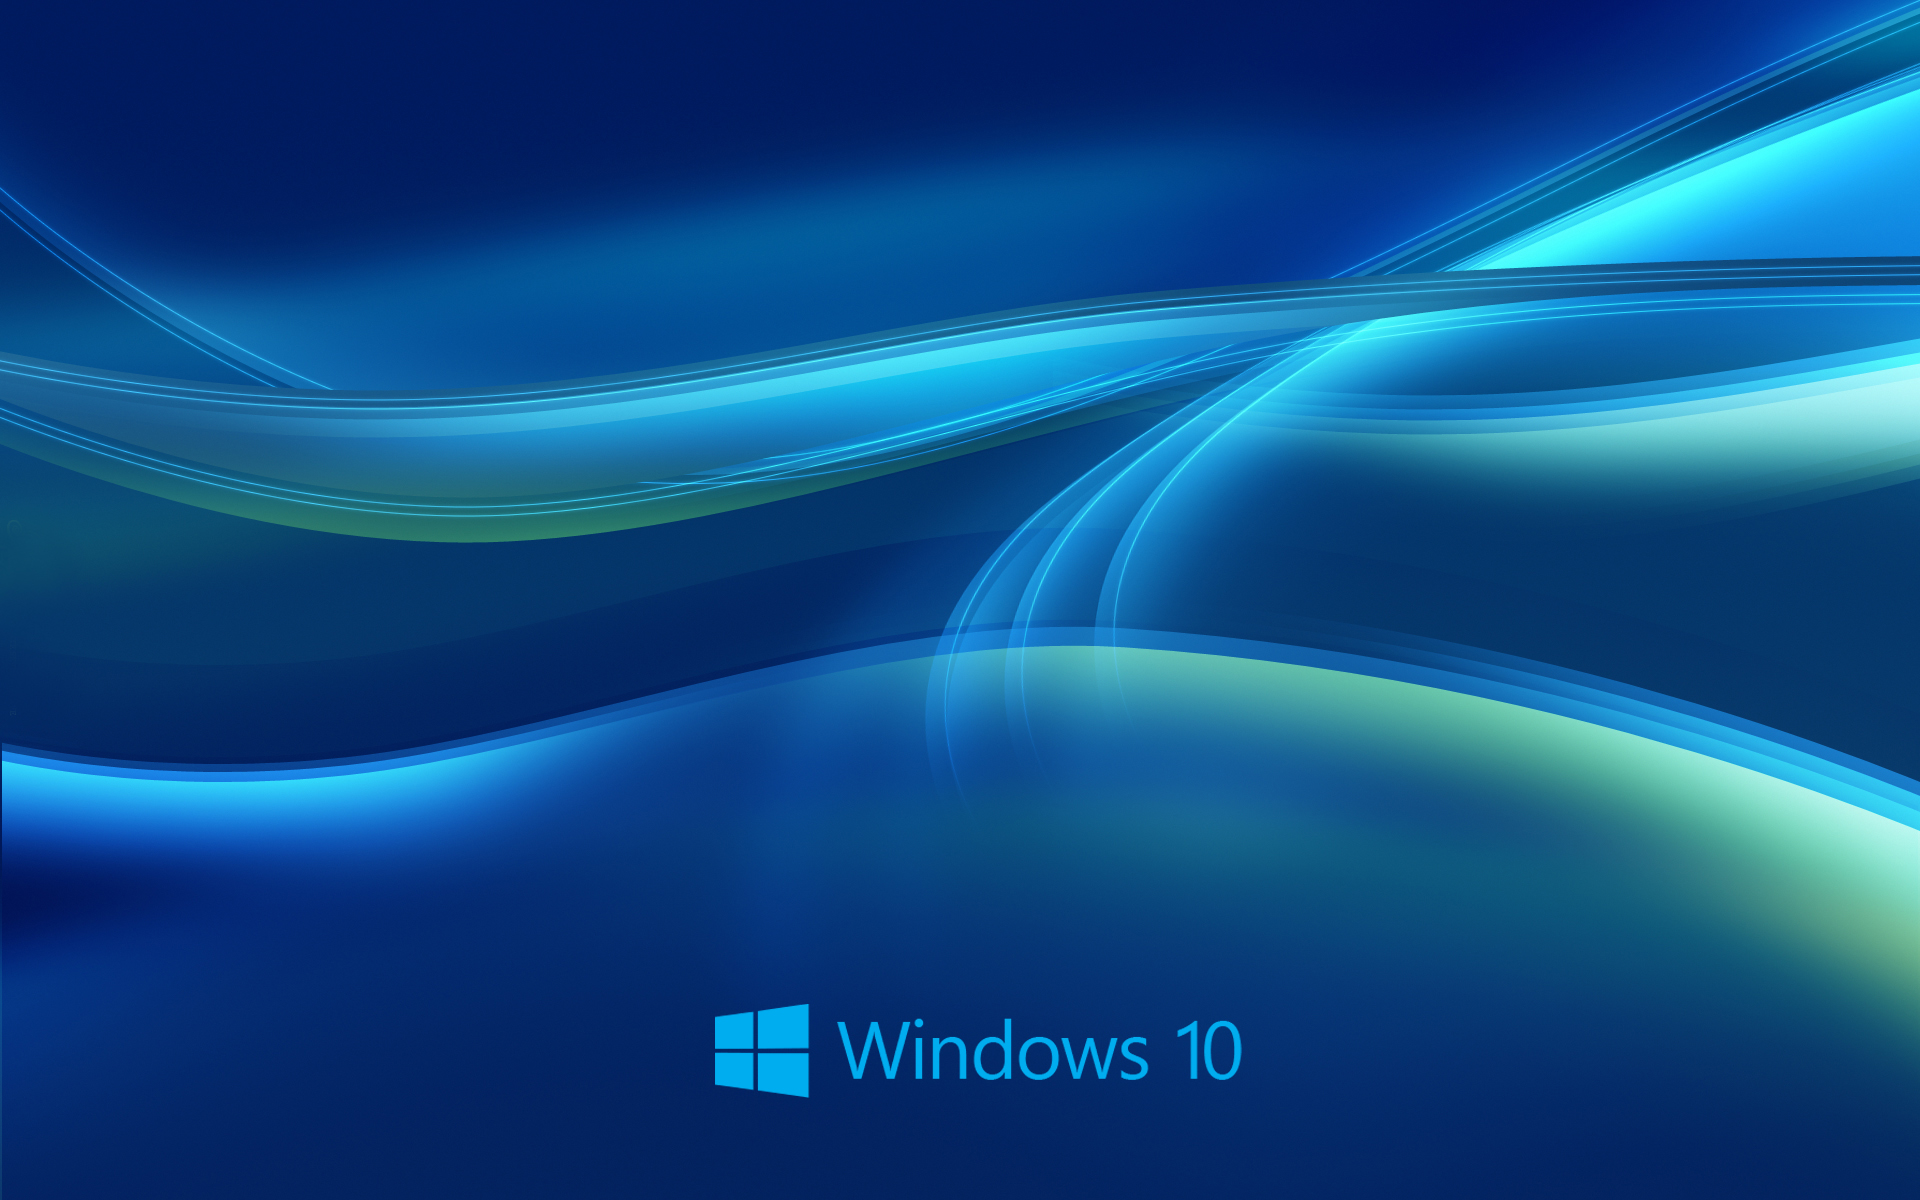 Windows-10-wallpapers.jpg